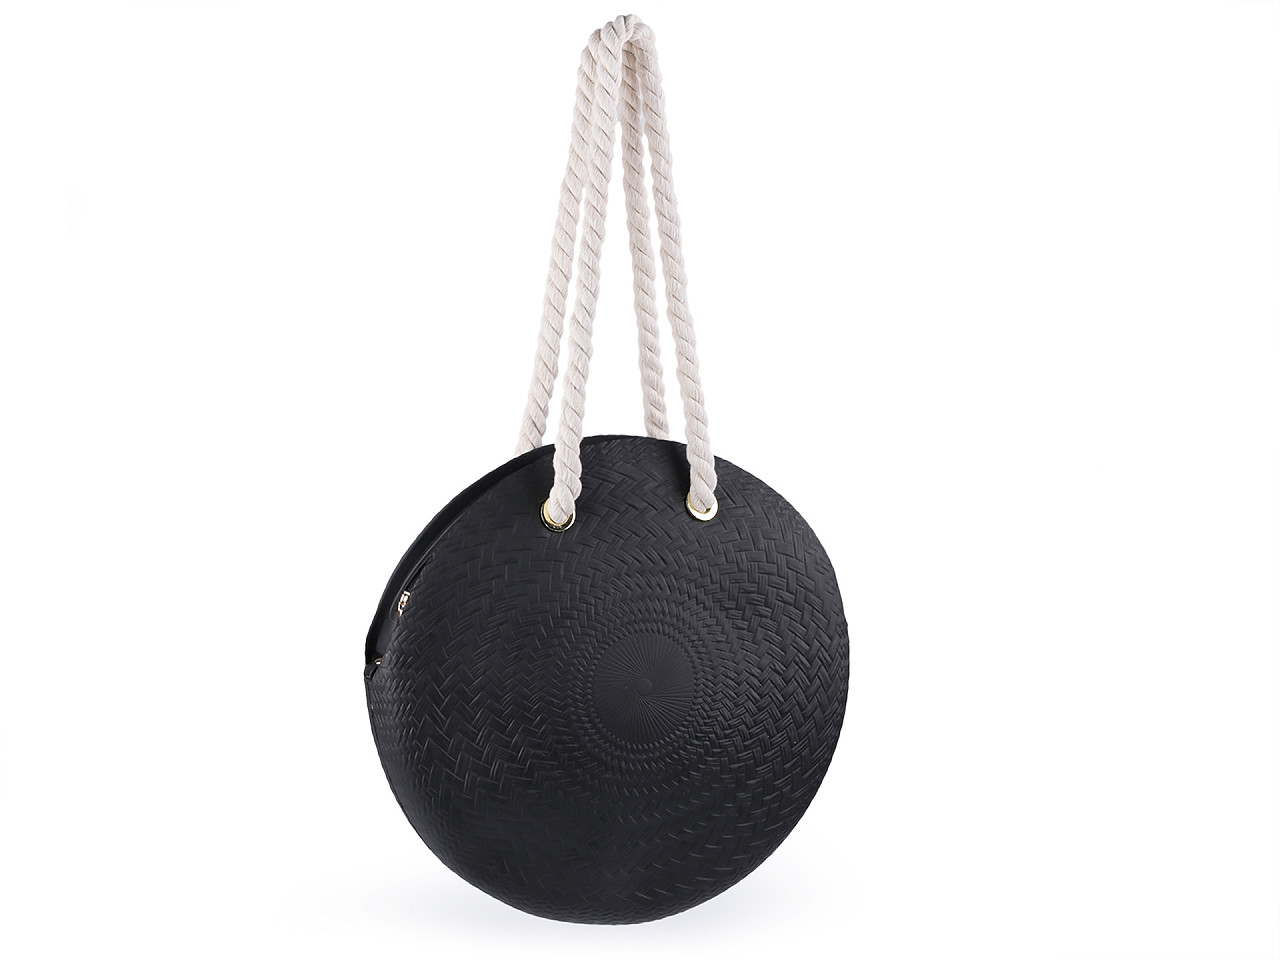 Runde Damenhandtasche aus Silikon Ø40 cm mit Reißverschluss, schwarz, 1 Stück